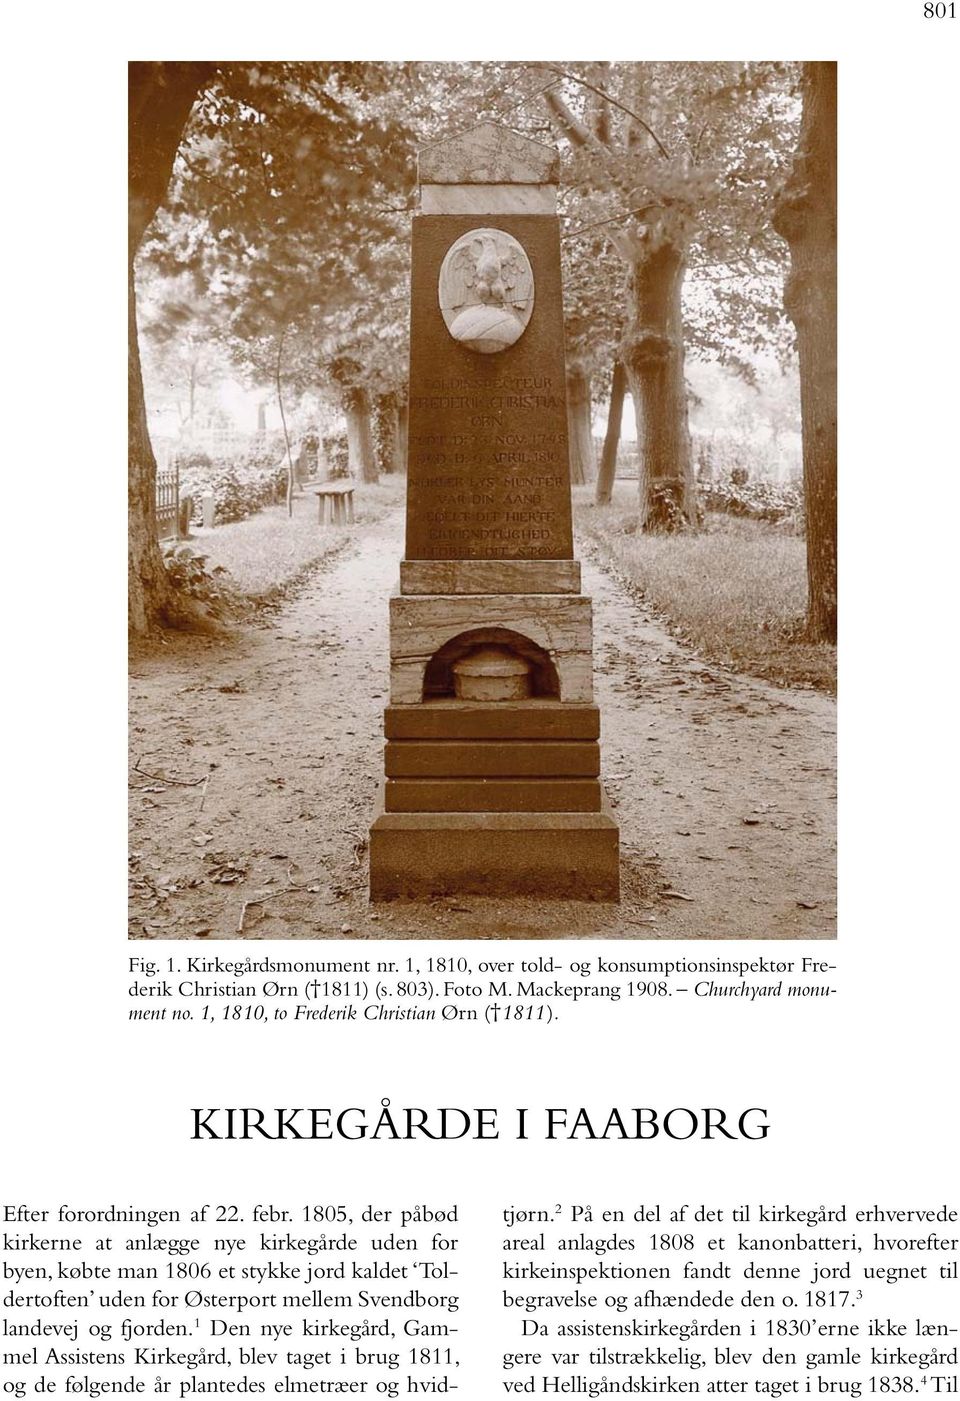 1805, der påbød kirkerne at anlægge nye kirkegårde uden for byen, købte man 1806 et stykke jord kaldet Toldertoften uden for Østerport mellem Svendborg landevej og fjorden.